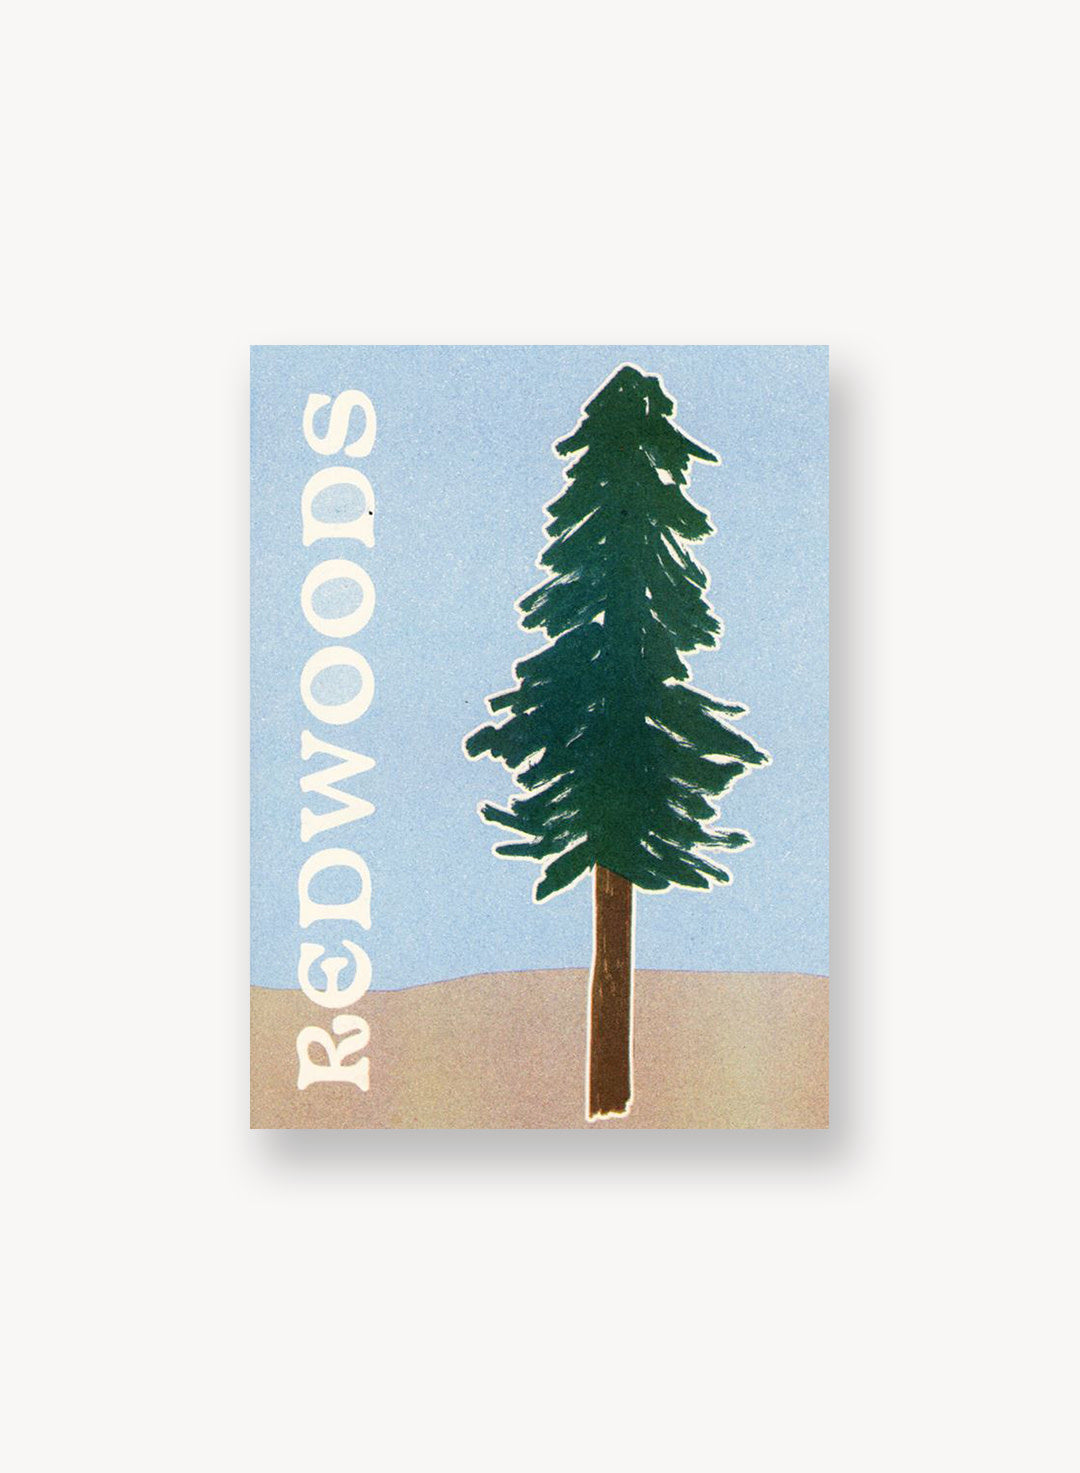 redwoods-zine.jpg